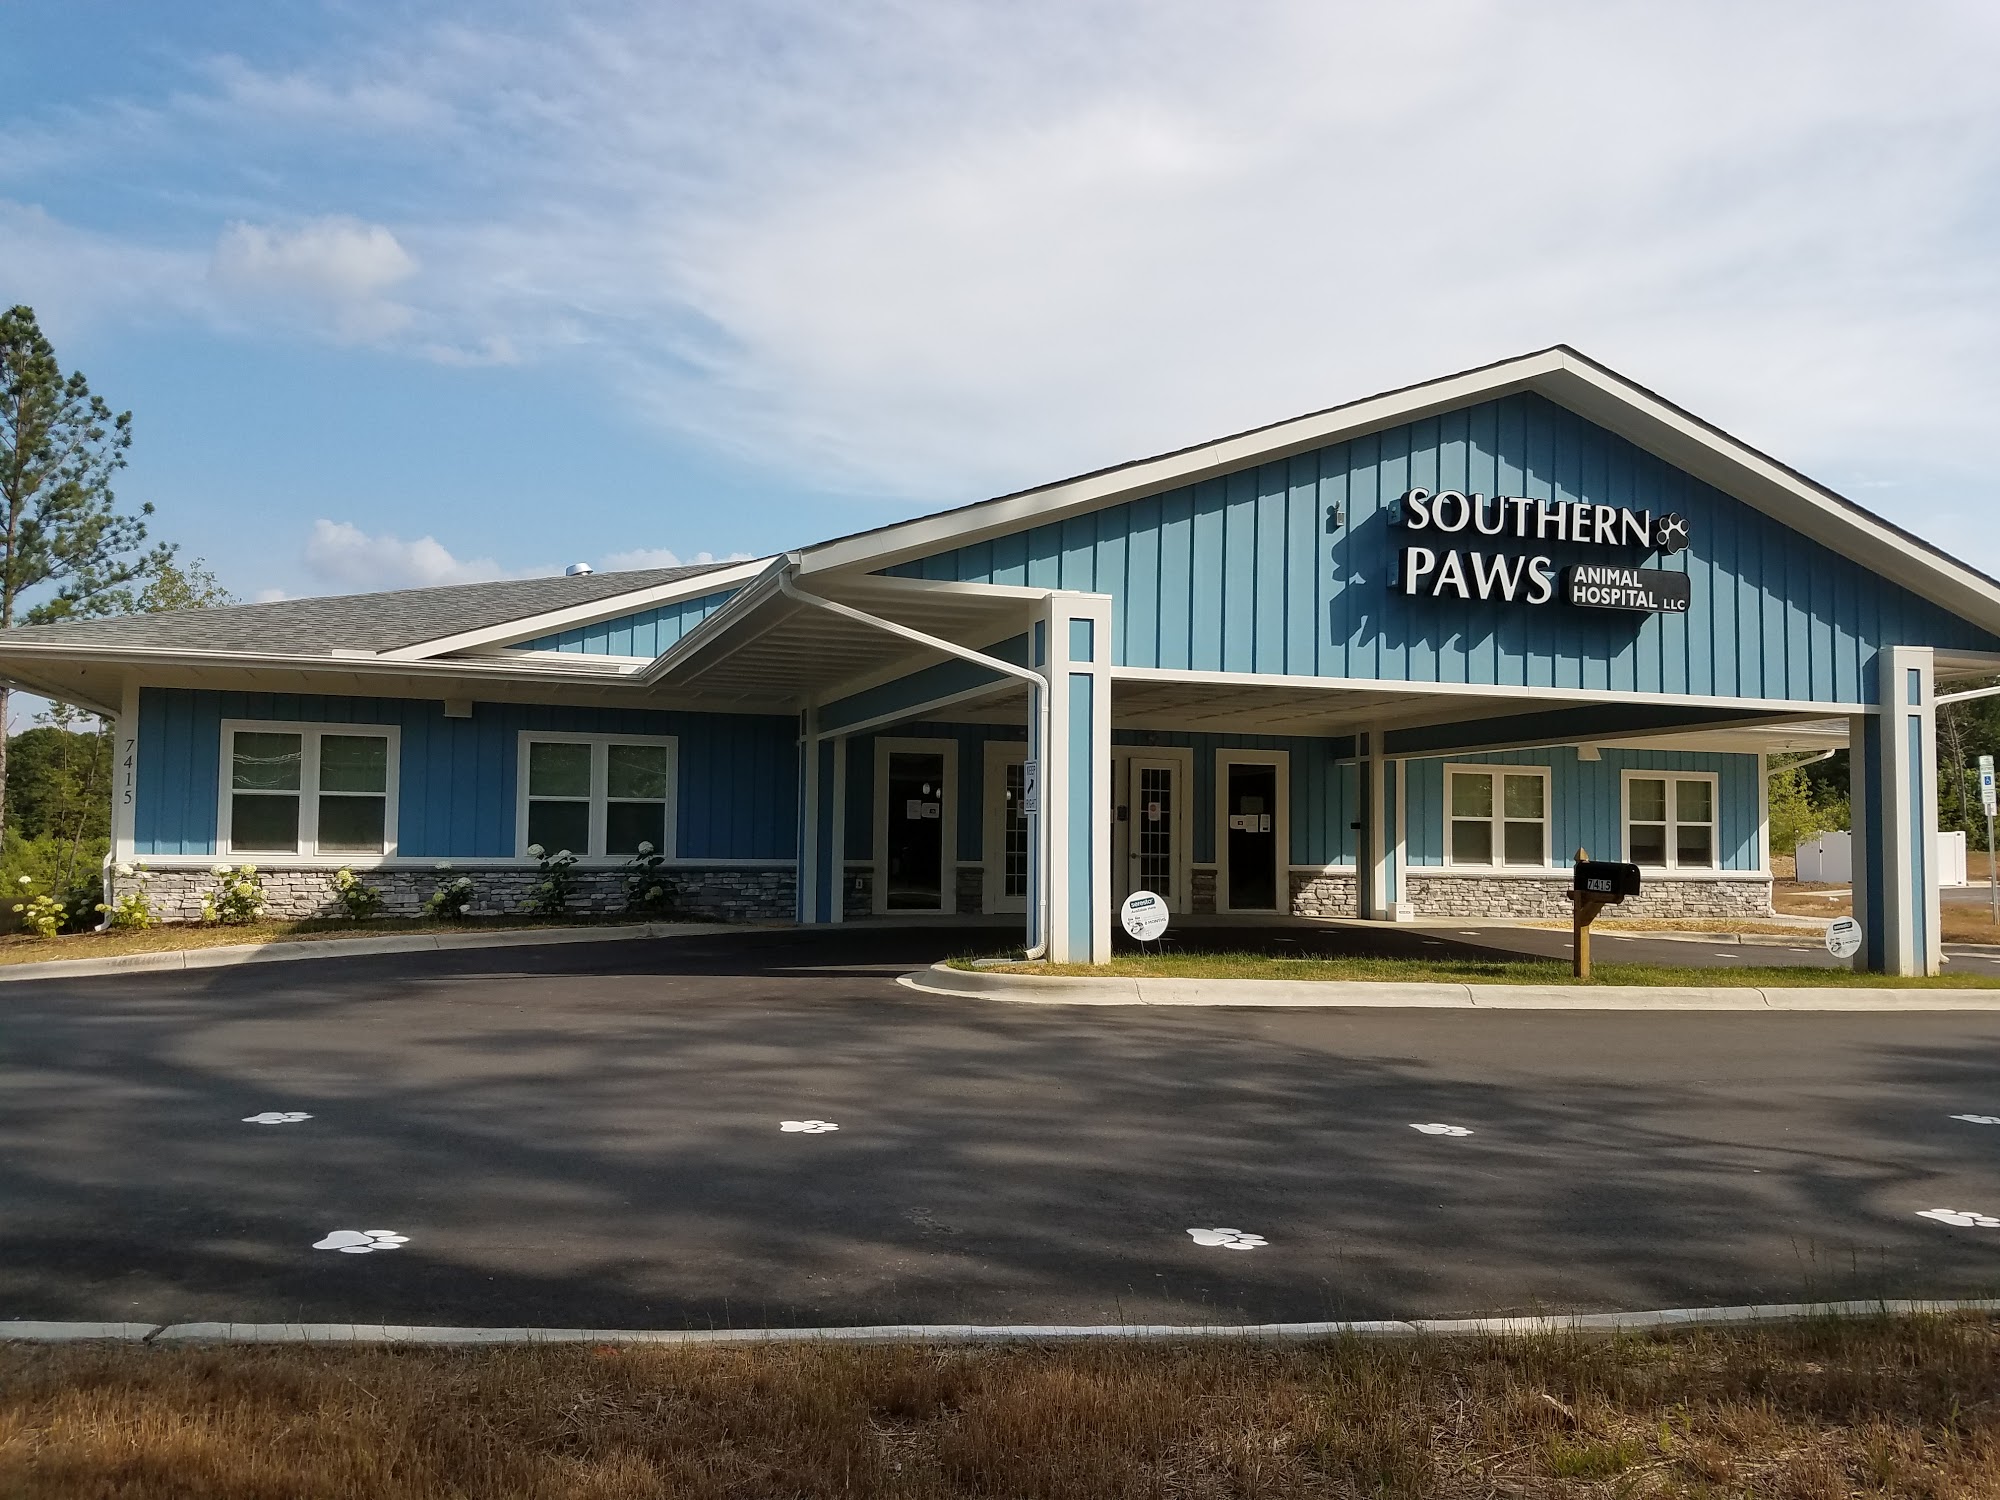 Southern Paws Animal Hospital